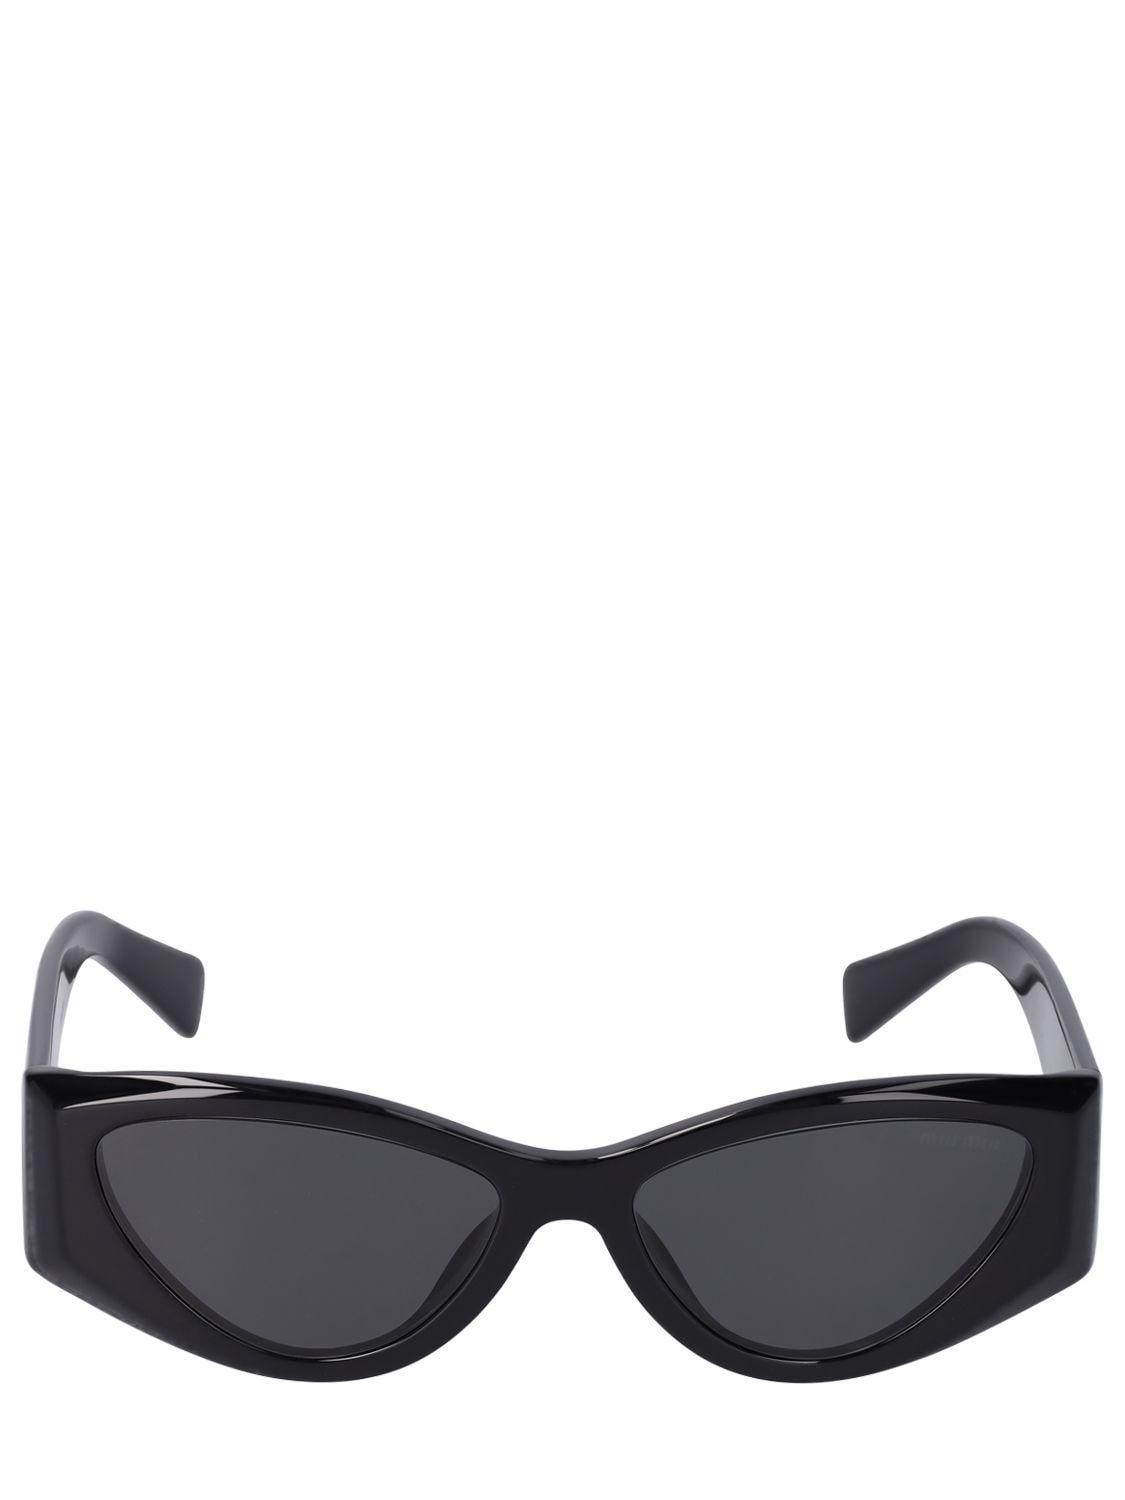 Miu Miu Cat-eye Acetate Sunglasses in Black | Lyst